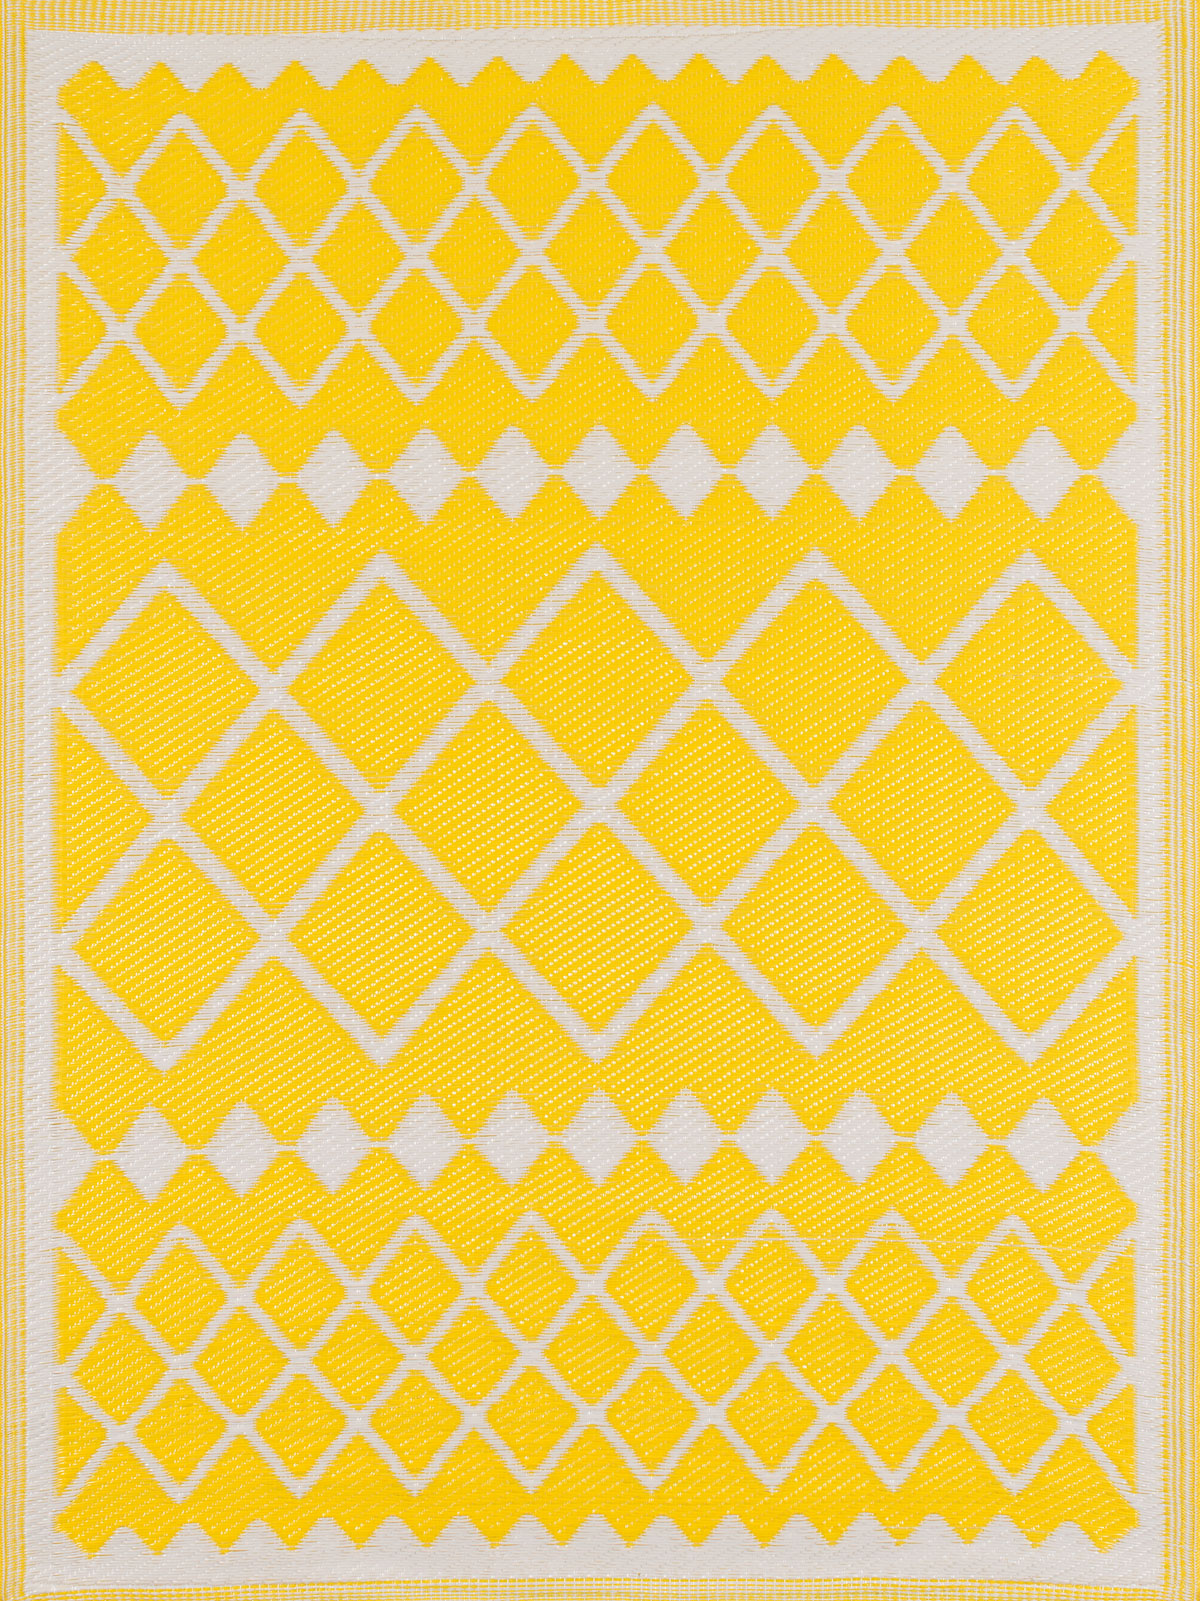 Tapis extérieur motif géométrique jaune 180x280